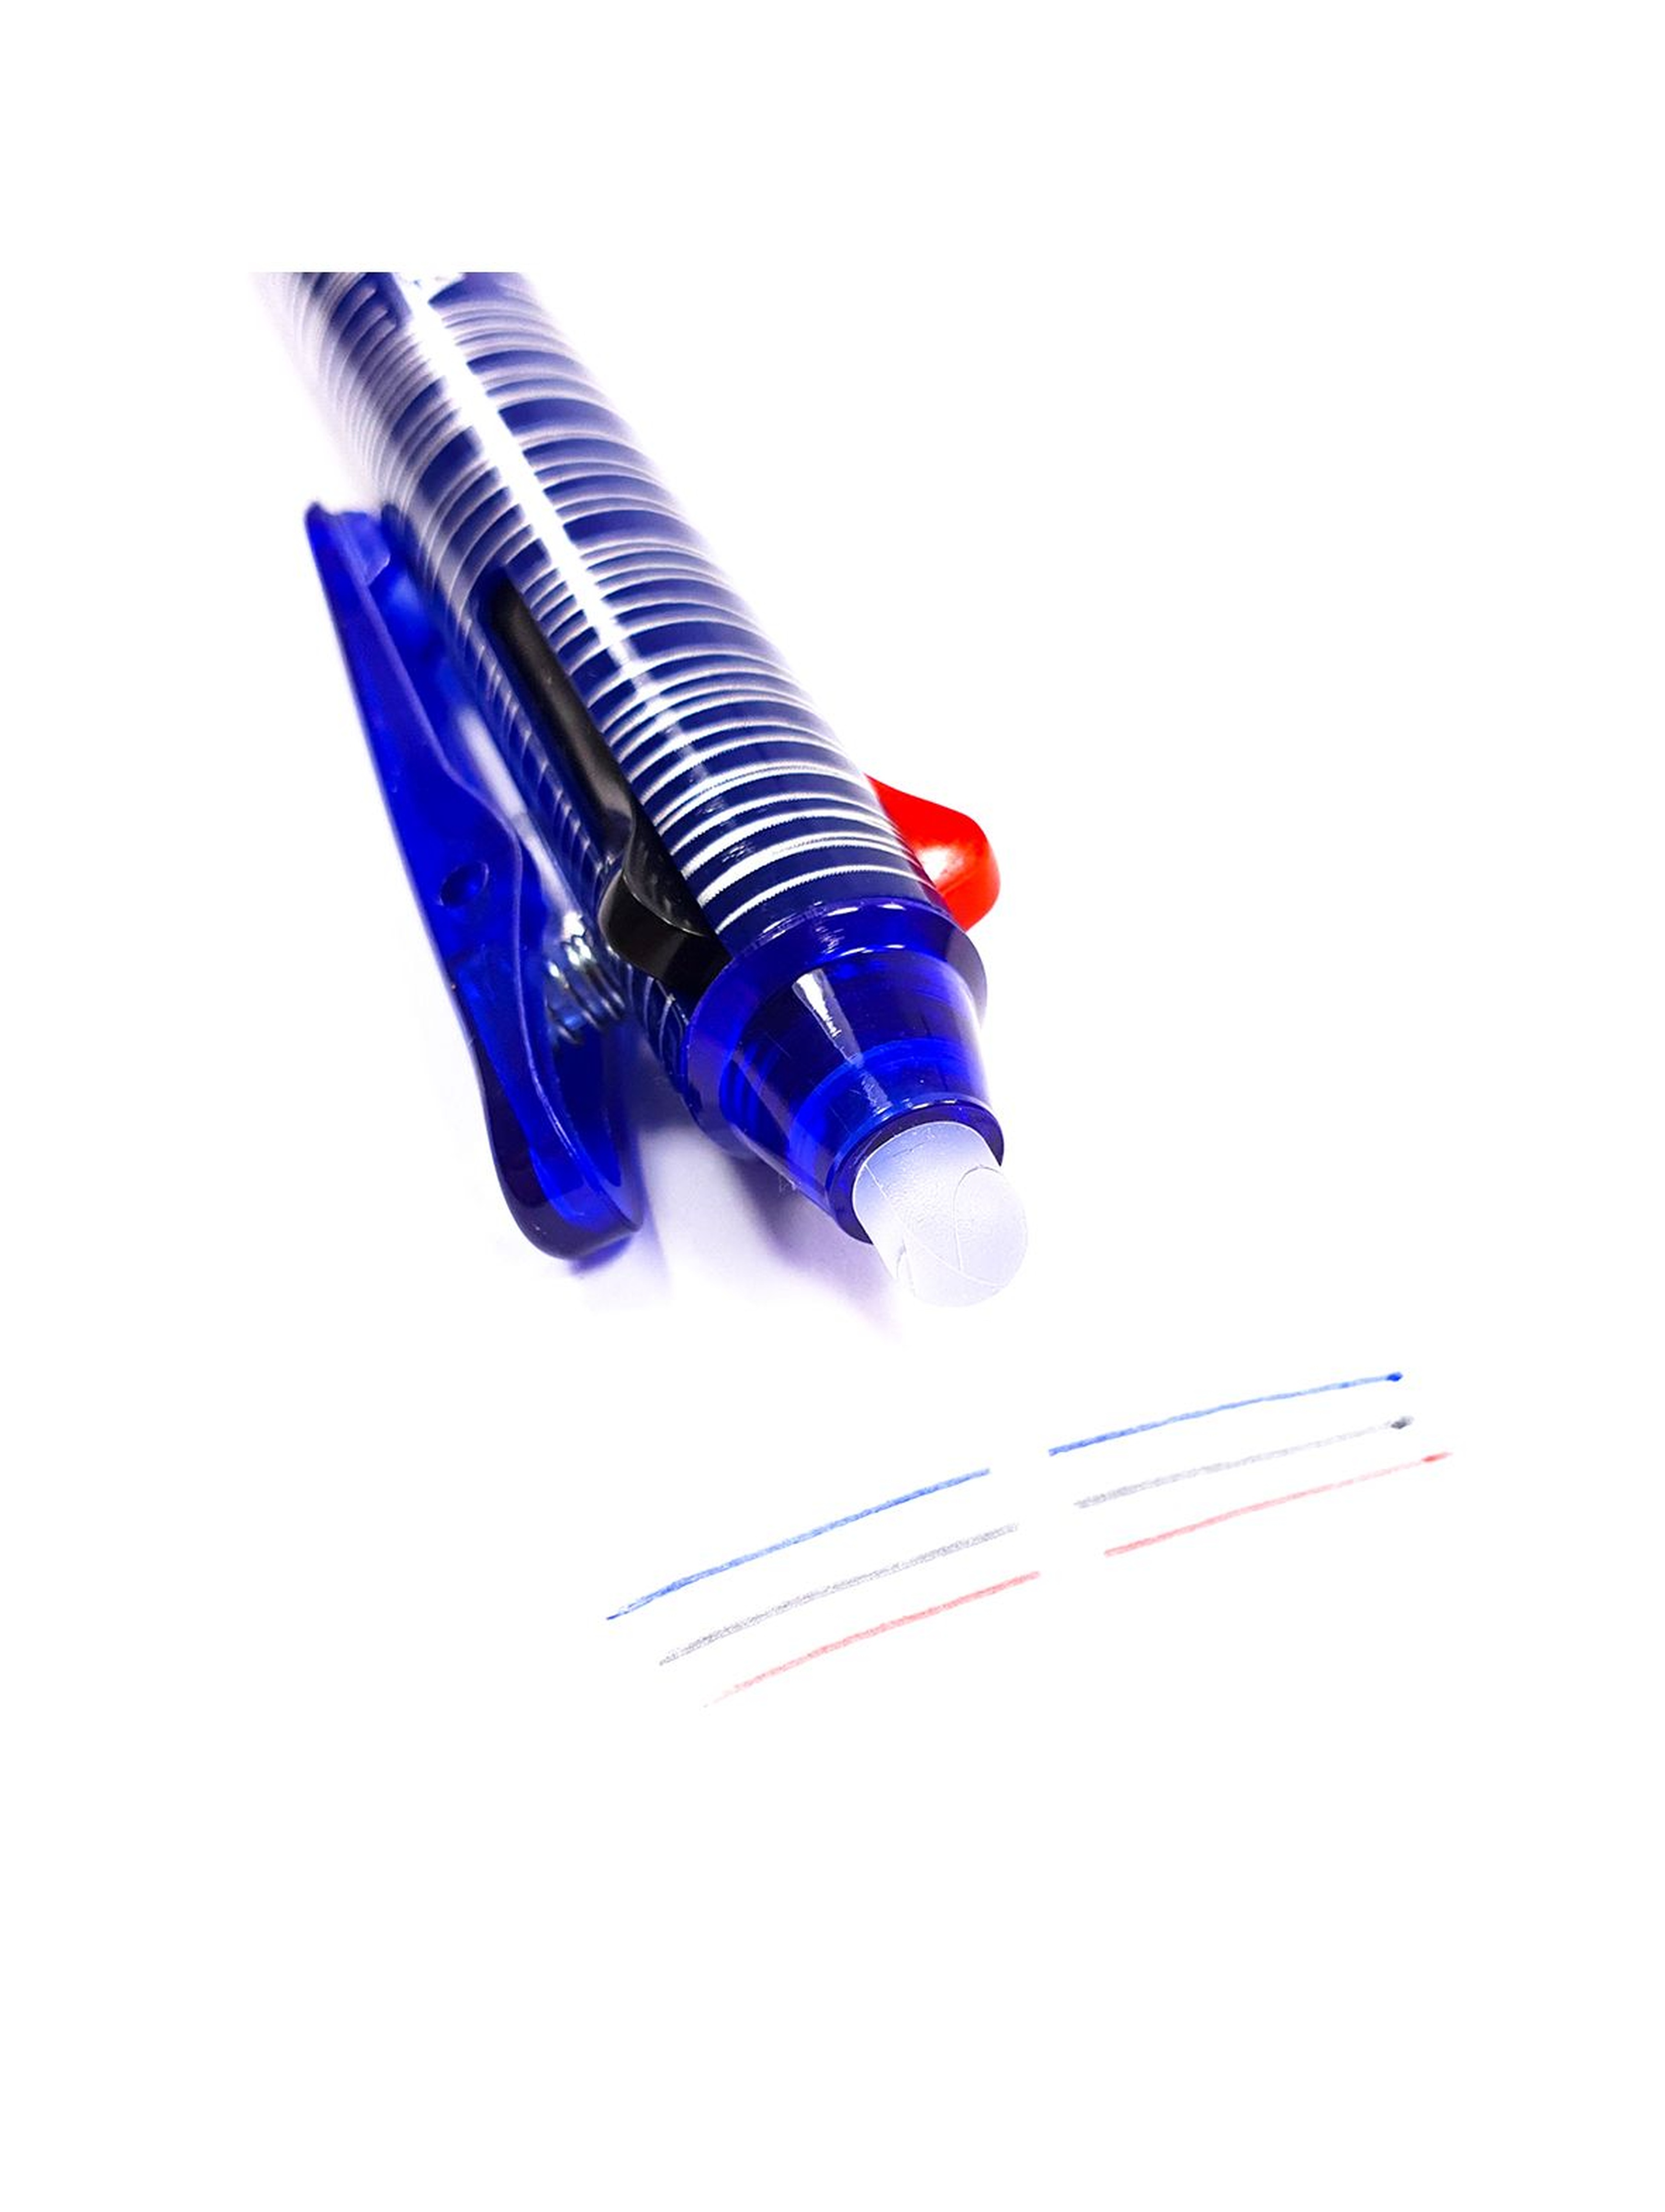 Długopis wymazywalny Kidea 3 kolory